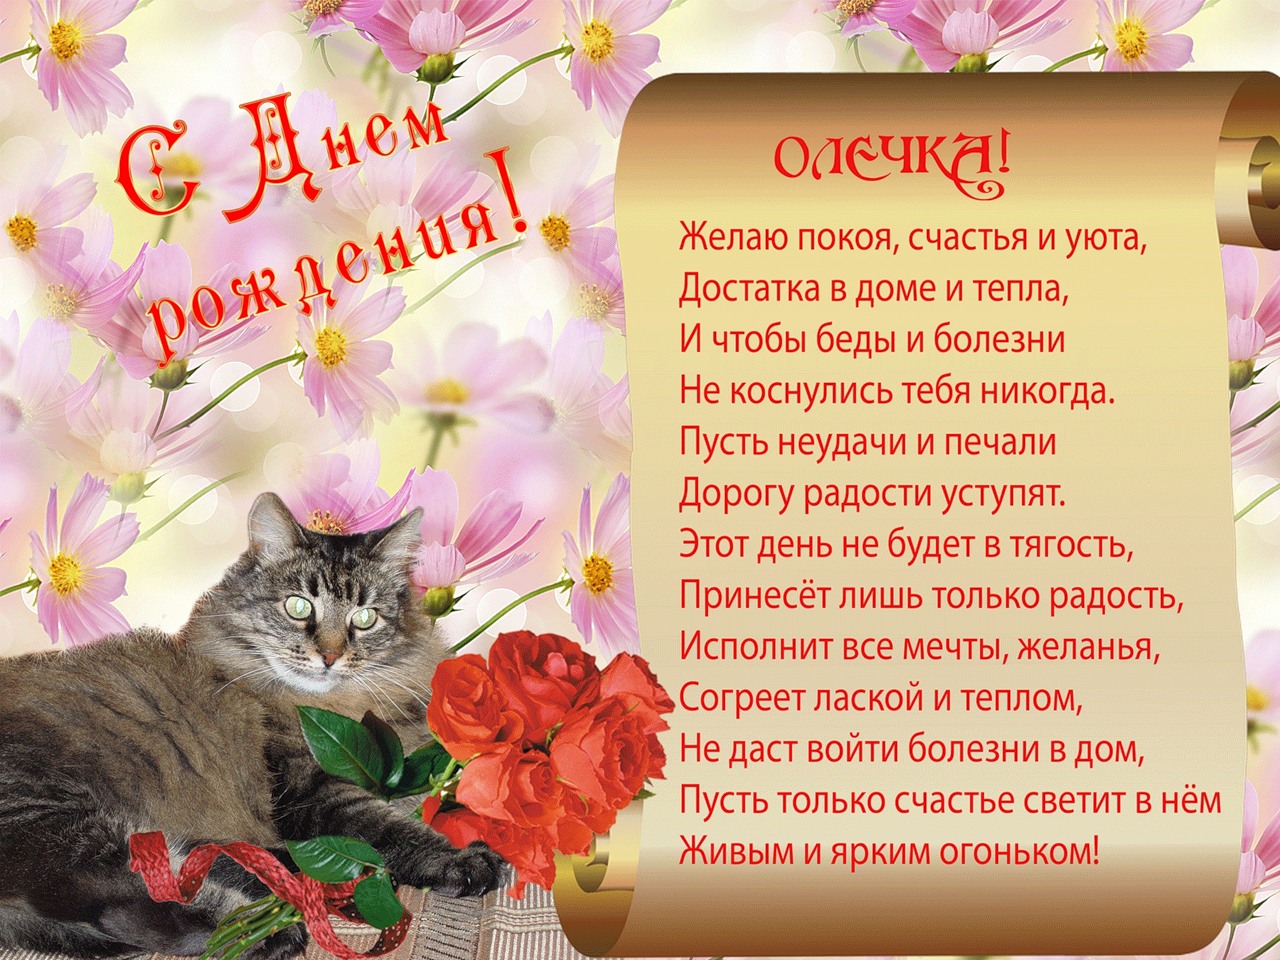 Рад поздравить с днем рождения. Поздравления с днём рождения Ольге. Поздравления с днём рождения Оле. Олечка с днём рождения поздравления. С днем рождения Олич поздравления.